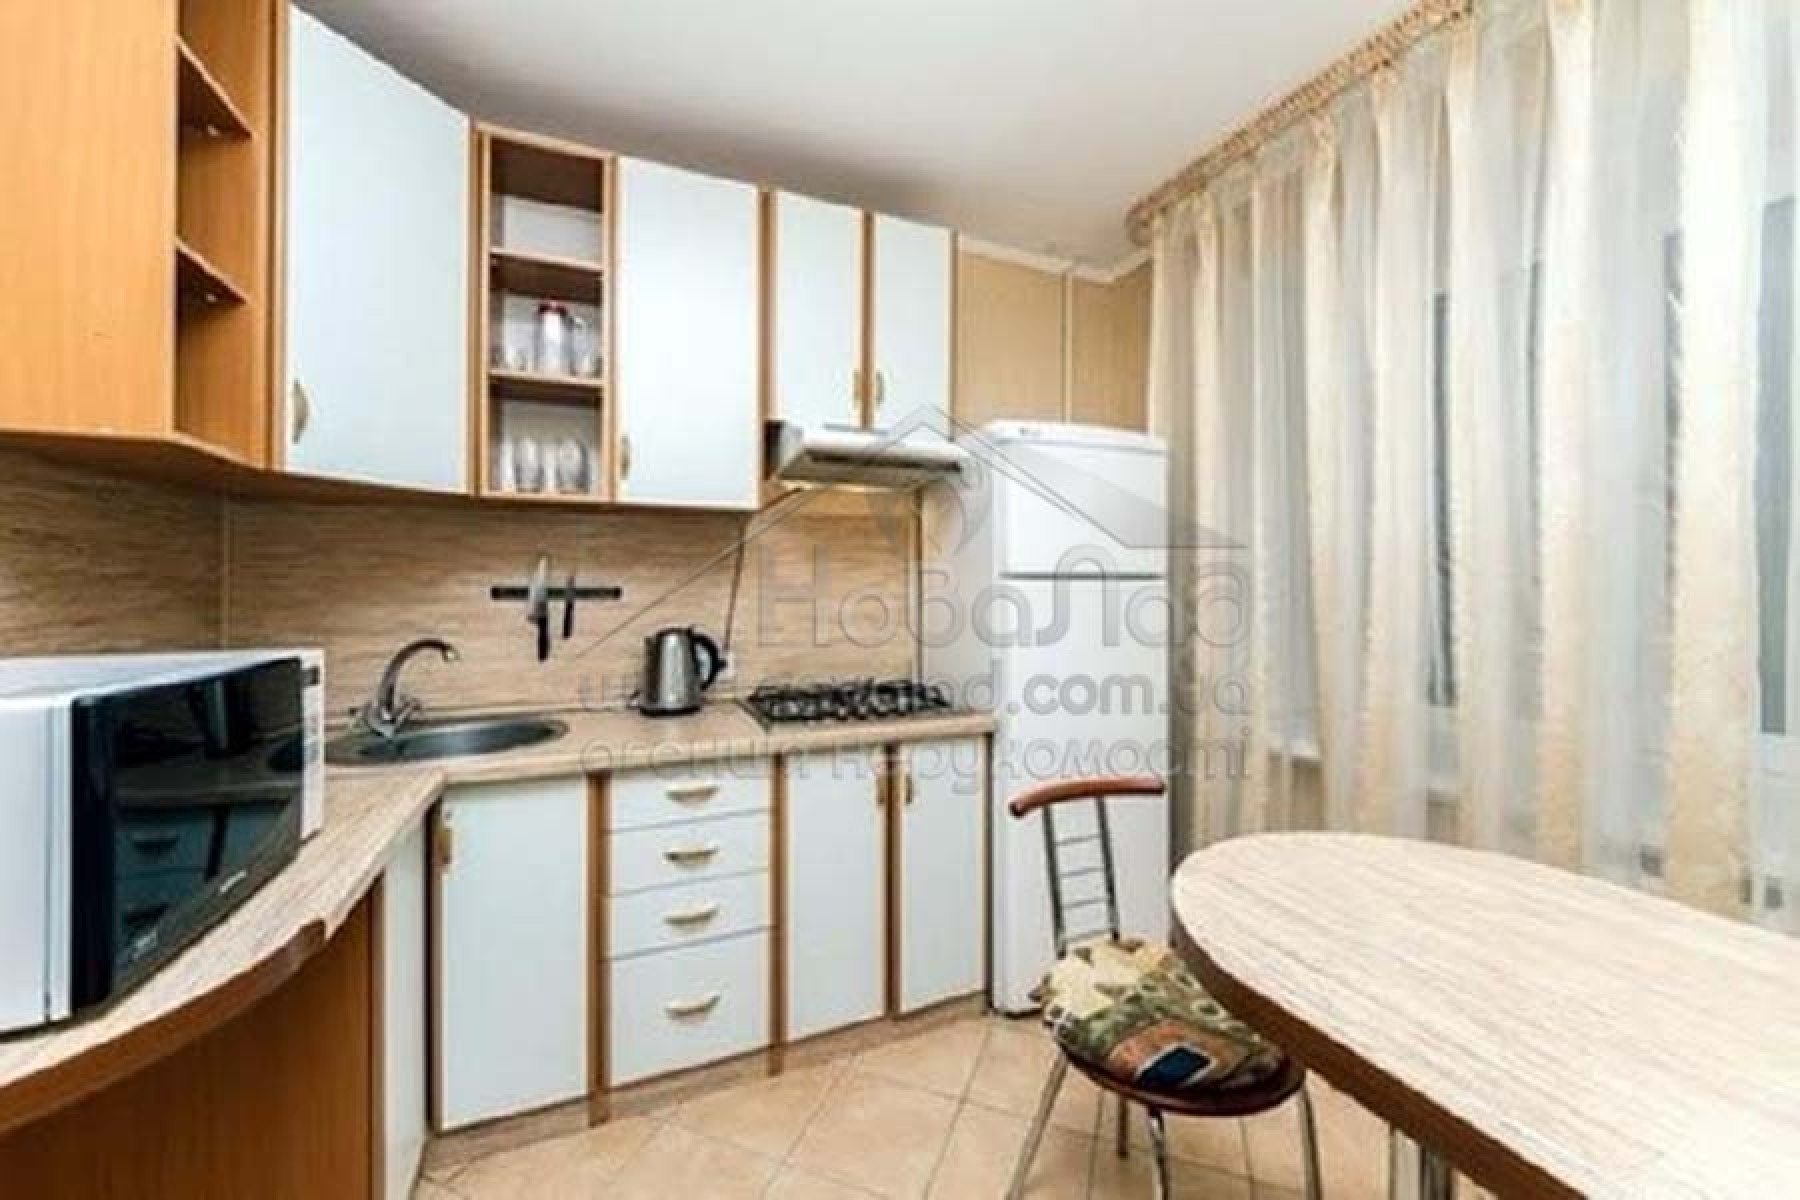 Предлагается просторная 2-комнатная квартира 51м2 в центре Печерска